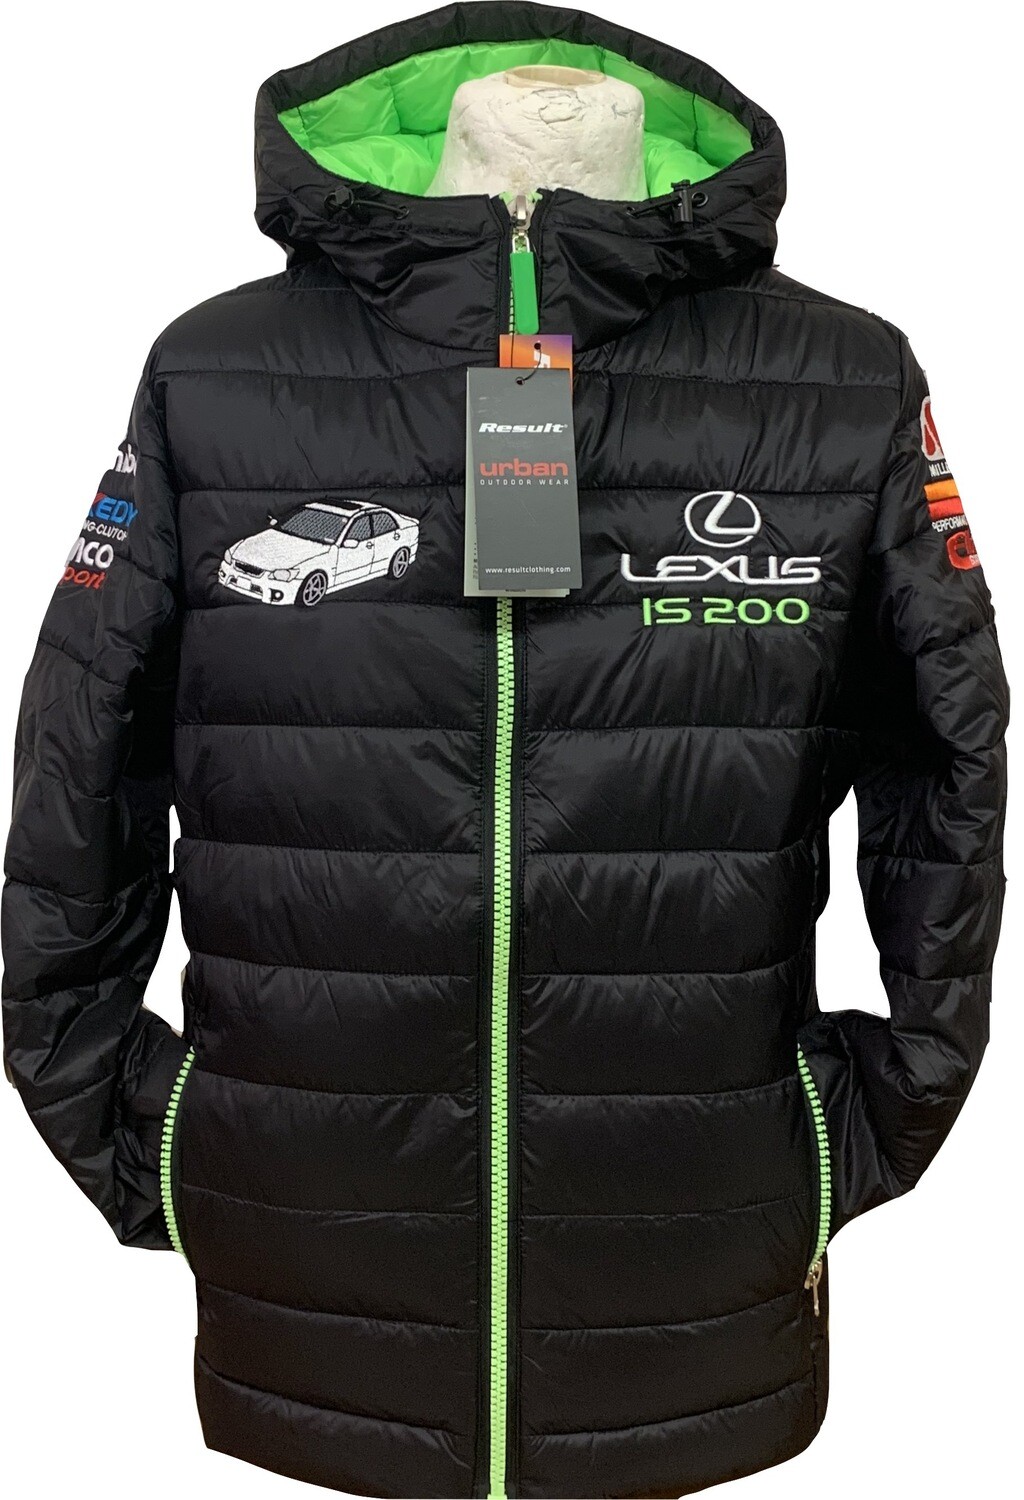 Lexus RallySport Jacket NEW!